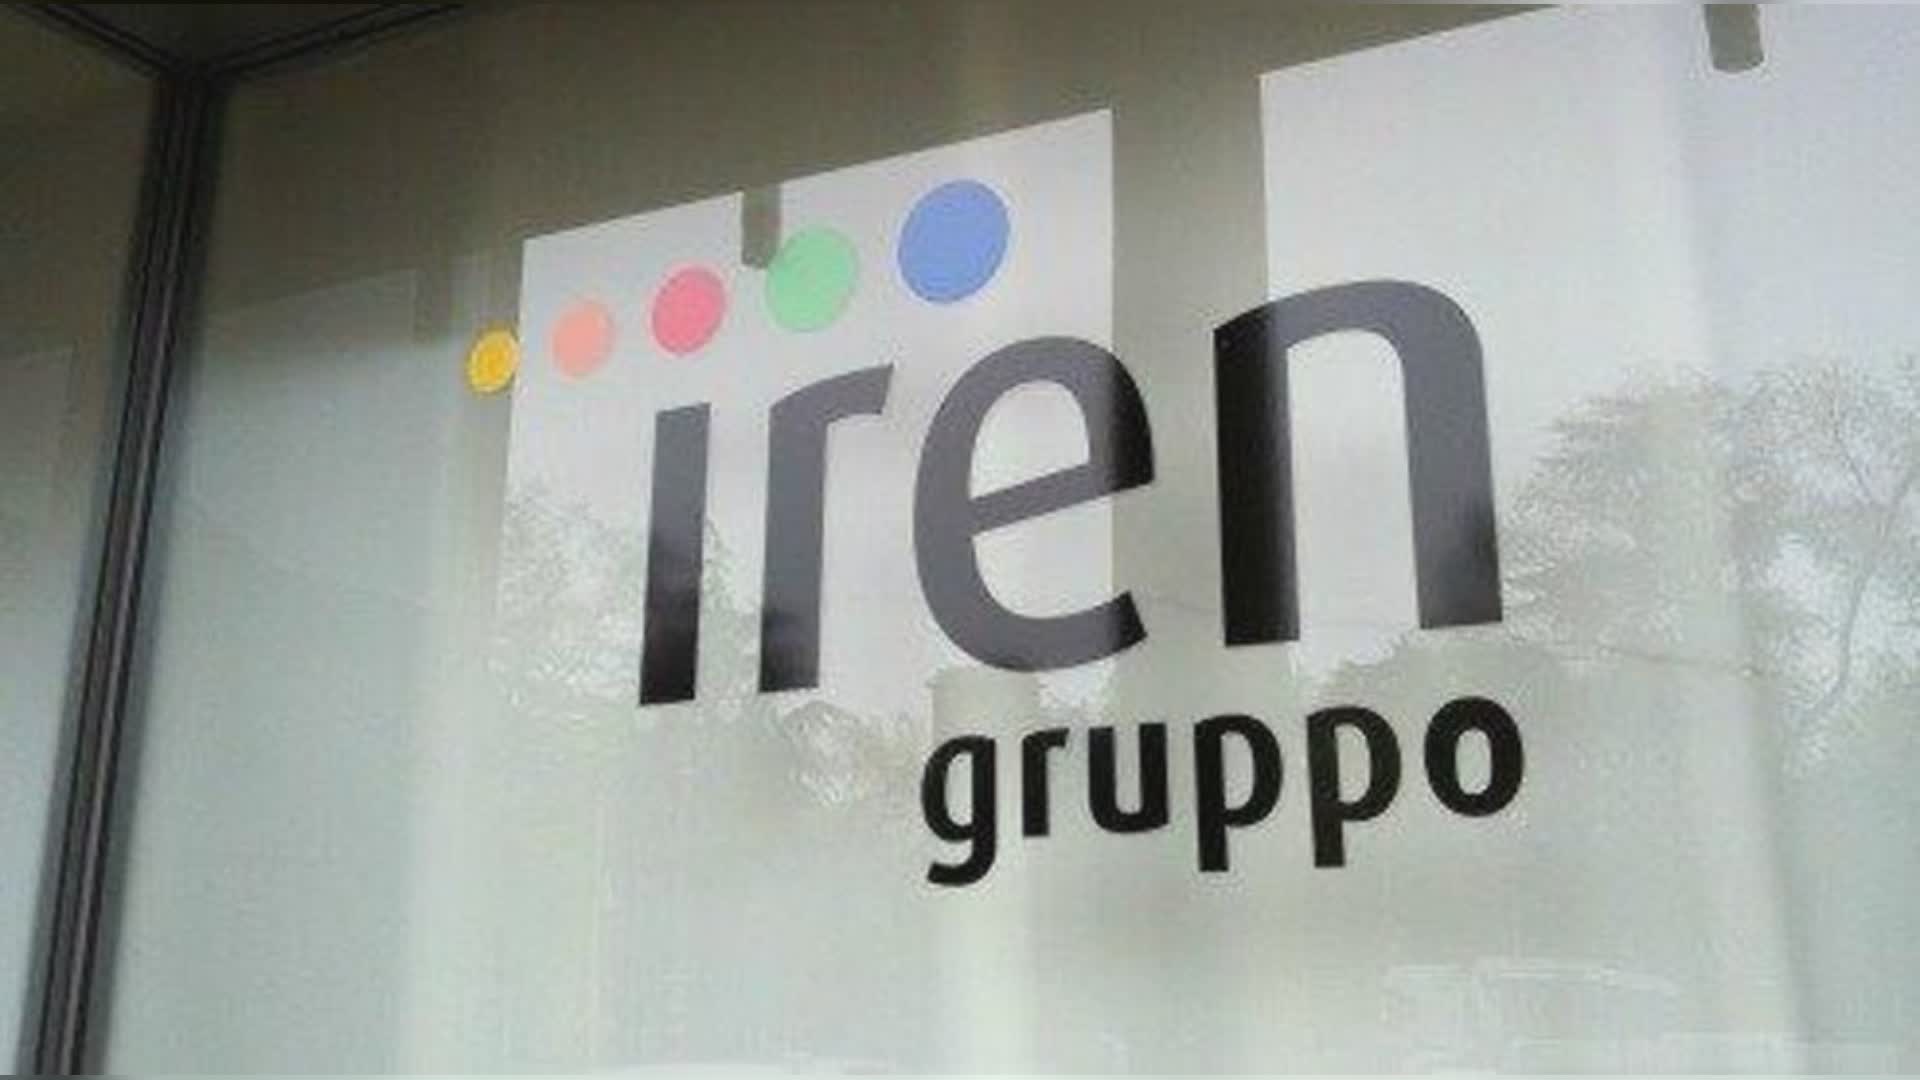 Genova, Iren affida i primi interventi per la realizzazione del nuovo depuratore della Val Petronio